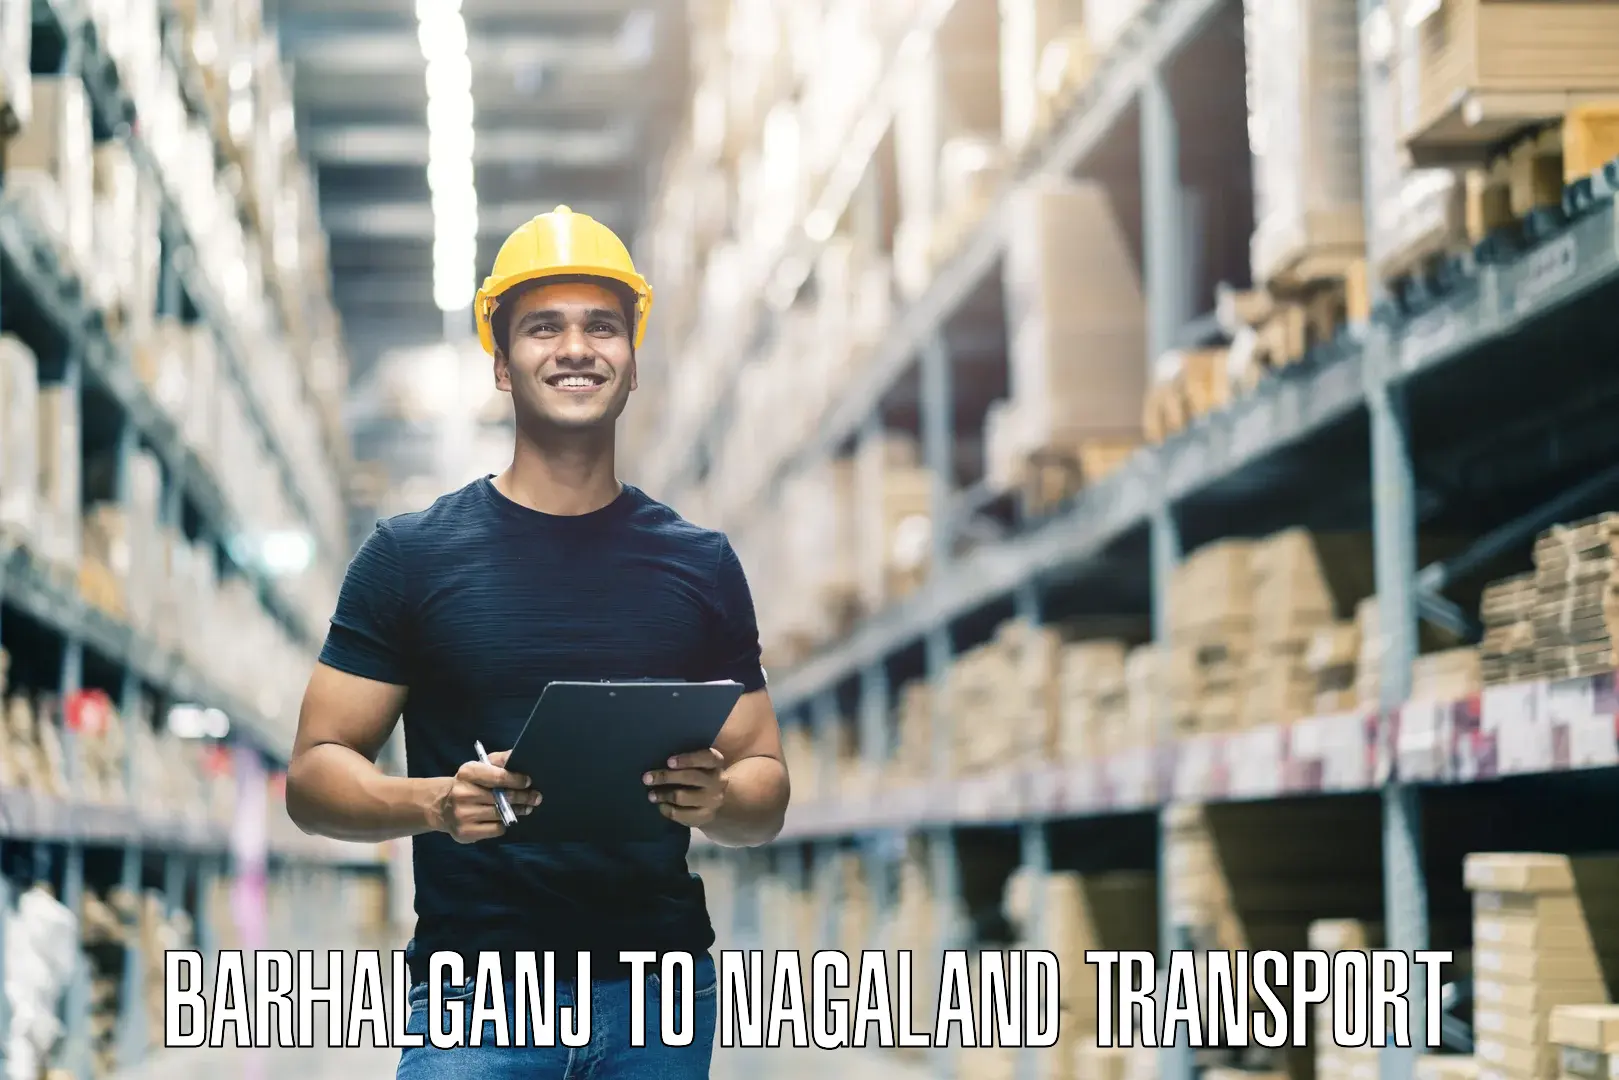 Commercial transport service Barhalganj to Nagaland